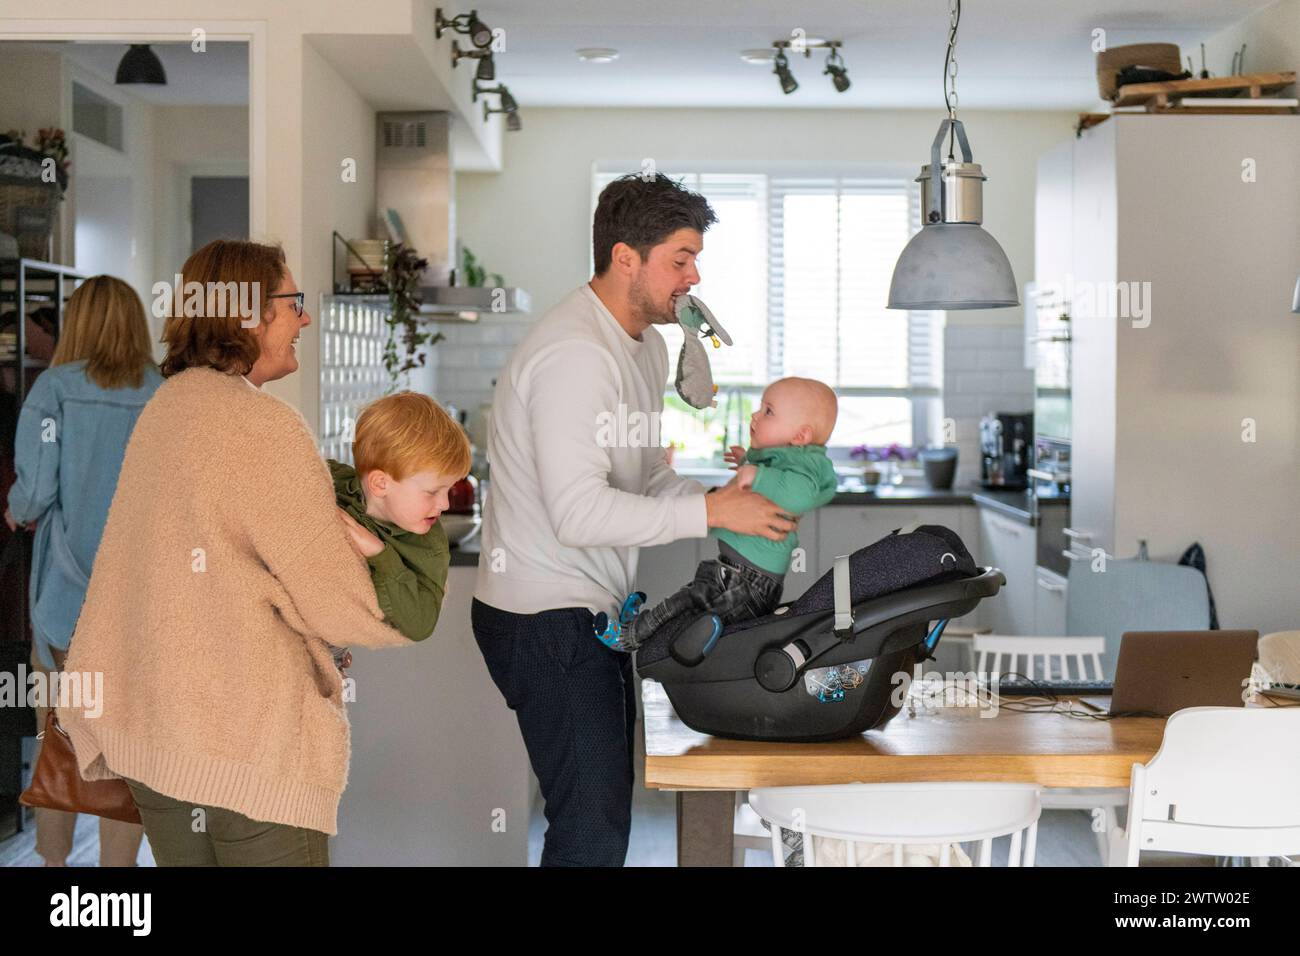 Ein Familienmoment in einer gemütlichen Küche, während ein Vater spielerisch ein Baby aus einem Autositz hebt, während ein Kind und eine Großmutter zuschauen. Stockfoto